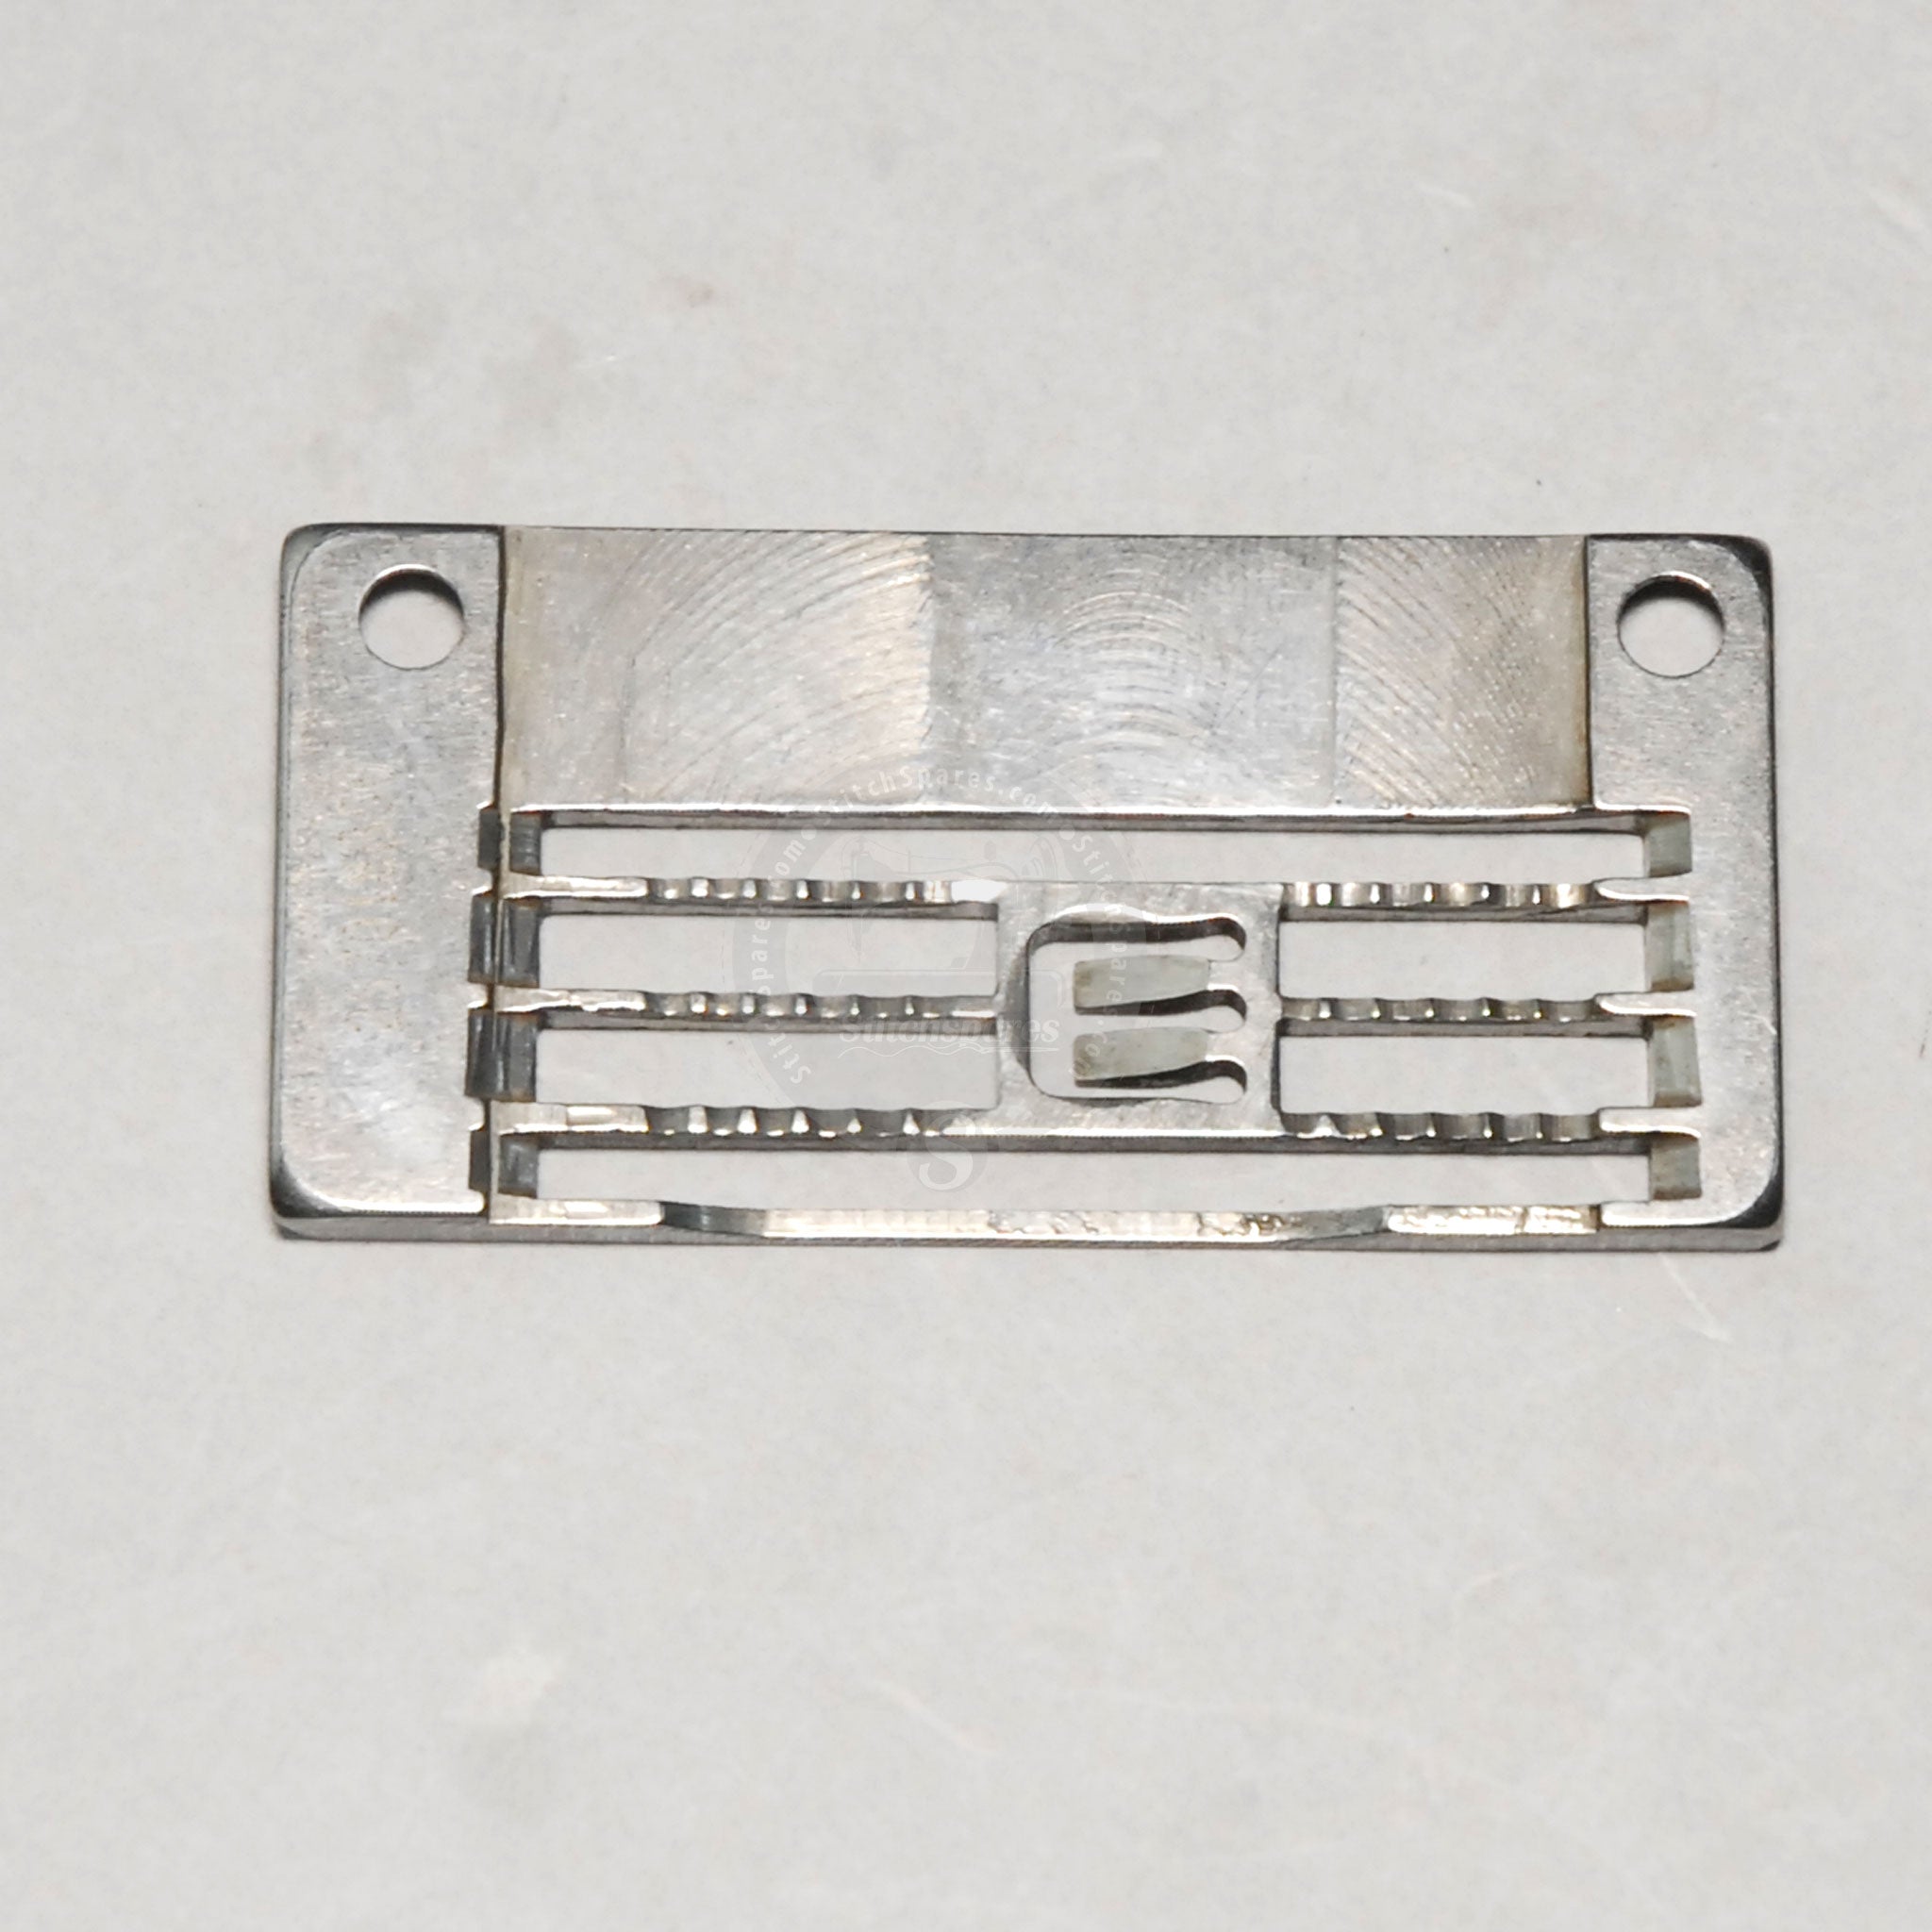 30115067 Aguja Placa Jack JK-8569 Flatbed Interlock (Flatlock) Máquina